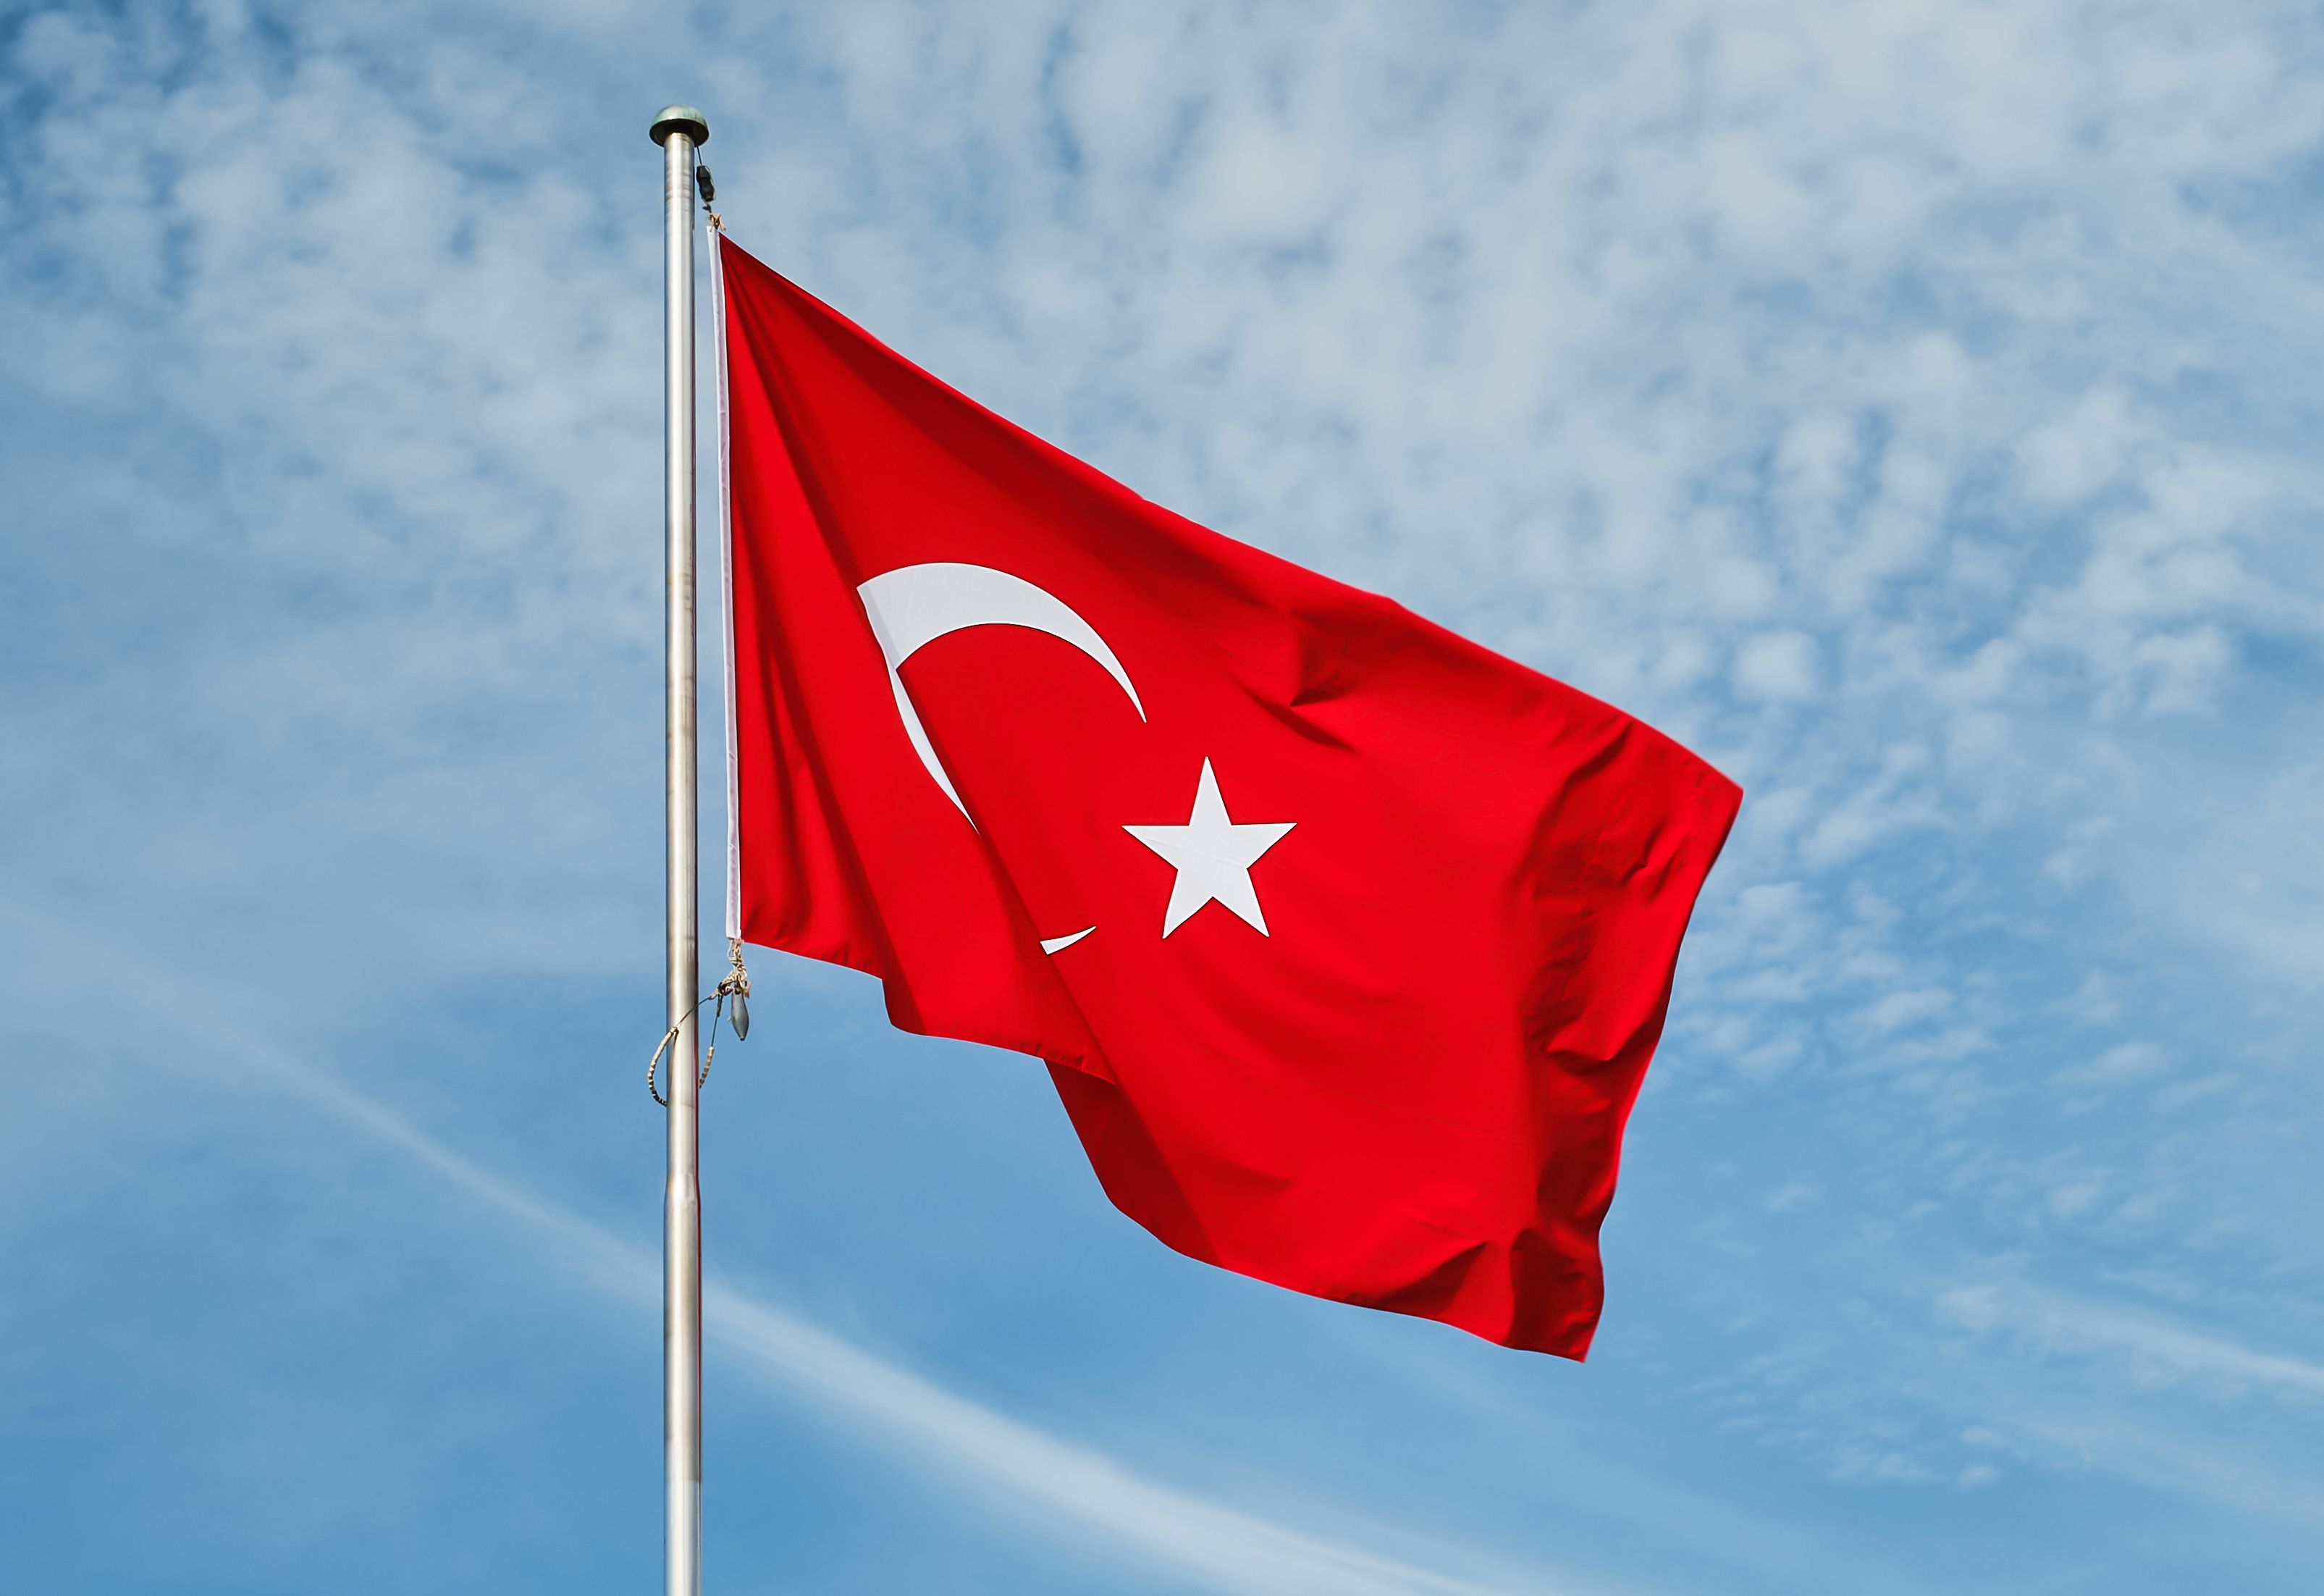 Türk Bayrağı 300x450 cm